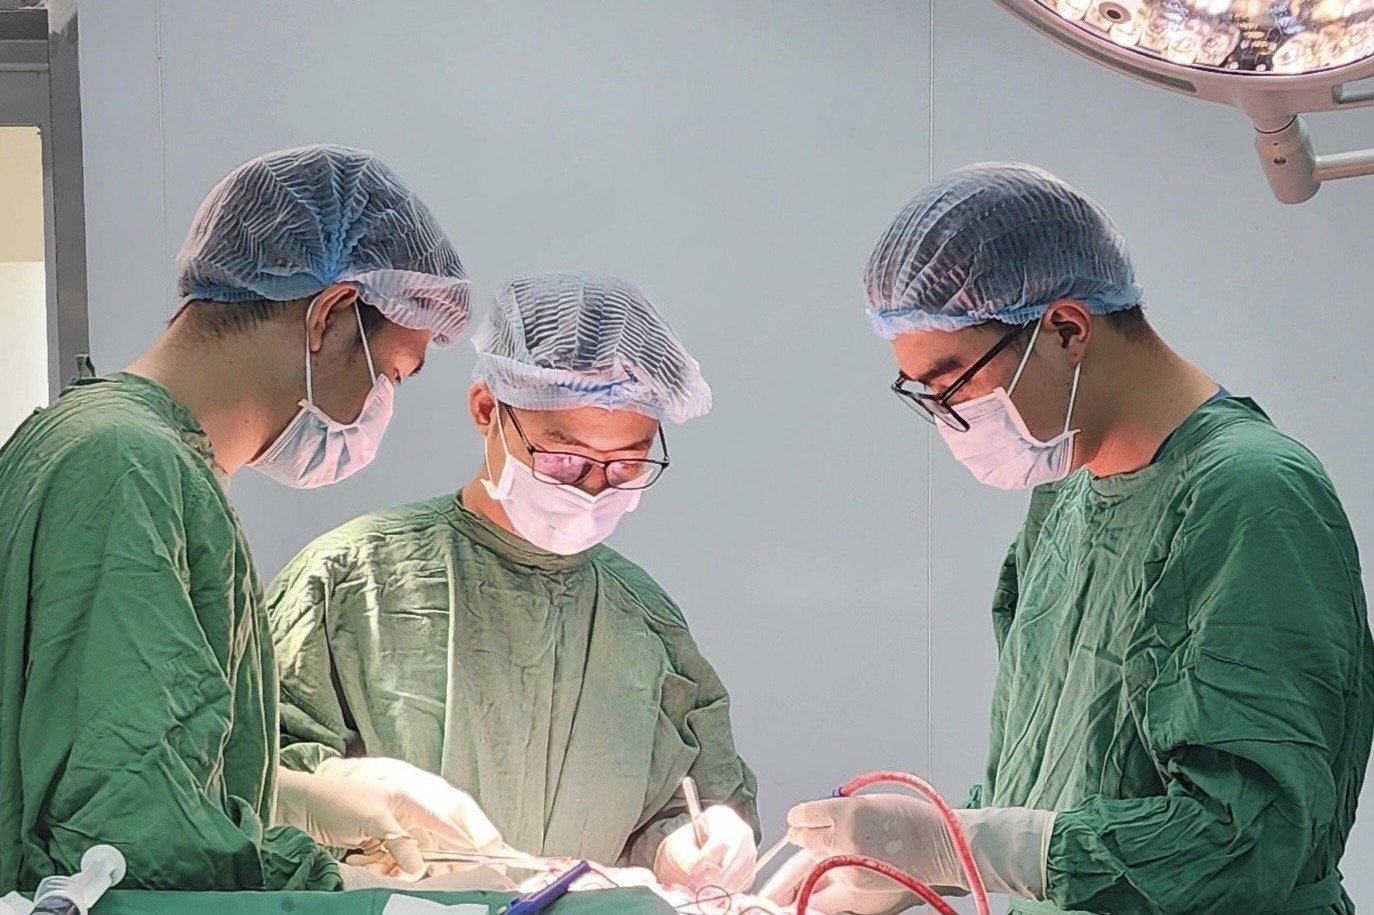 Phẫu Thuật Cấp Cứu Thành Công Bé Trai 10 Tháng Tuổi Bị Ngã Bể Lún Sọ